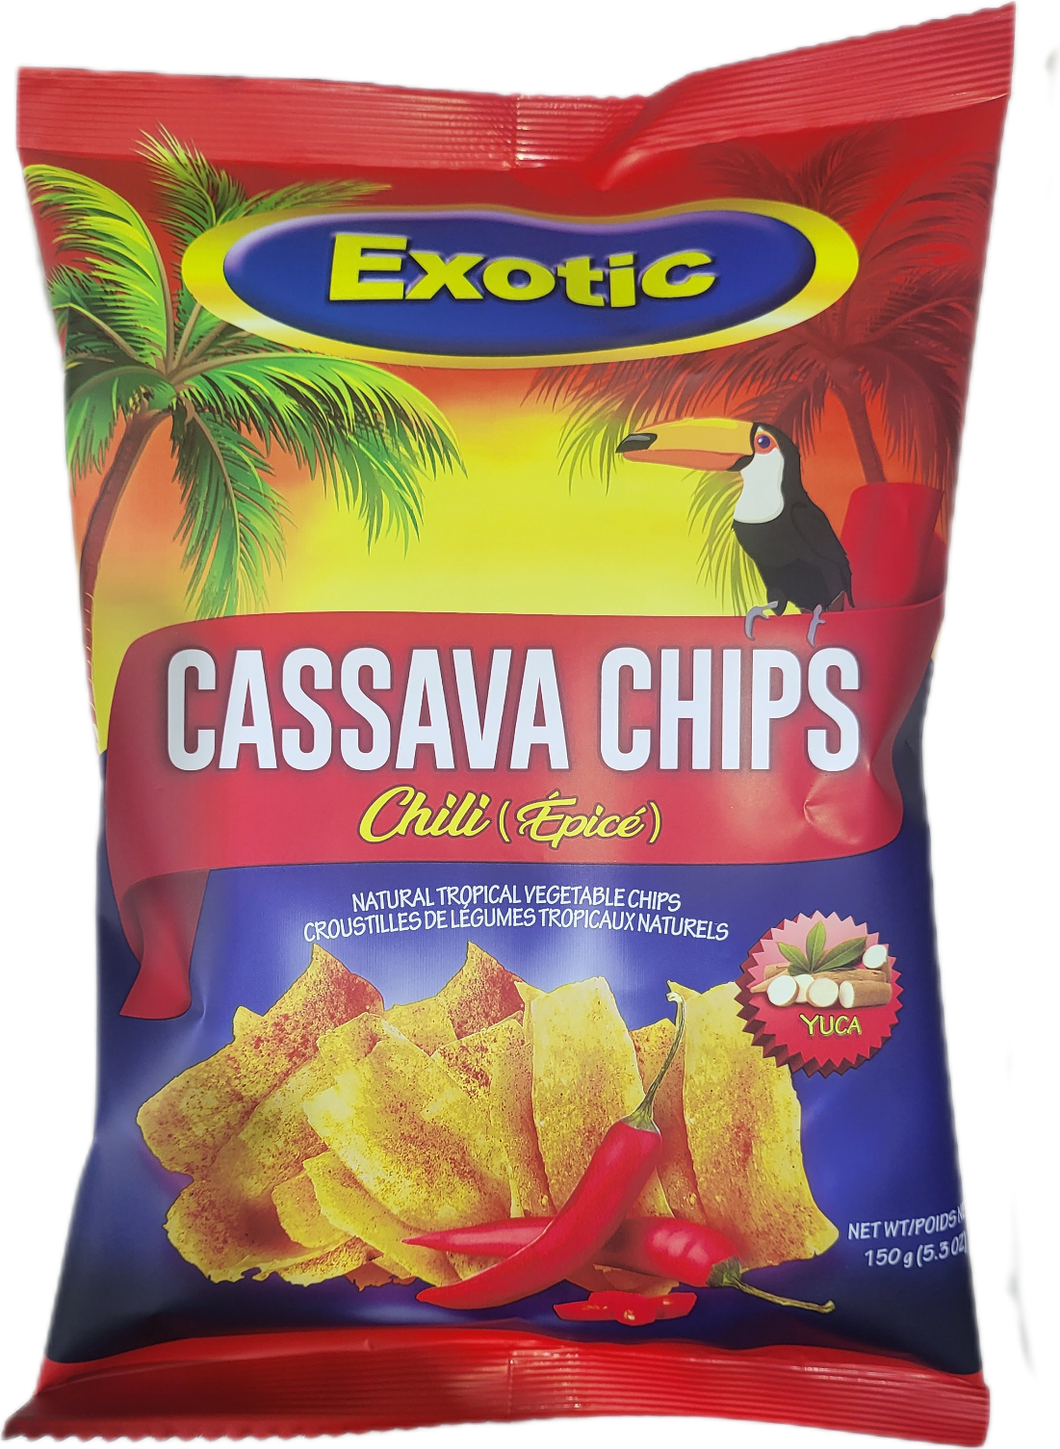 Cassava Chips - Chili